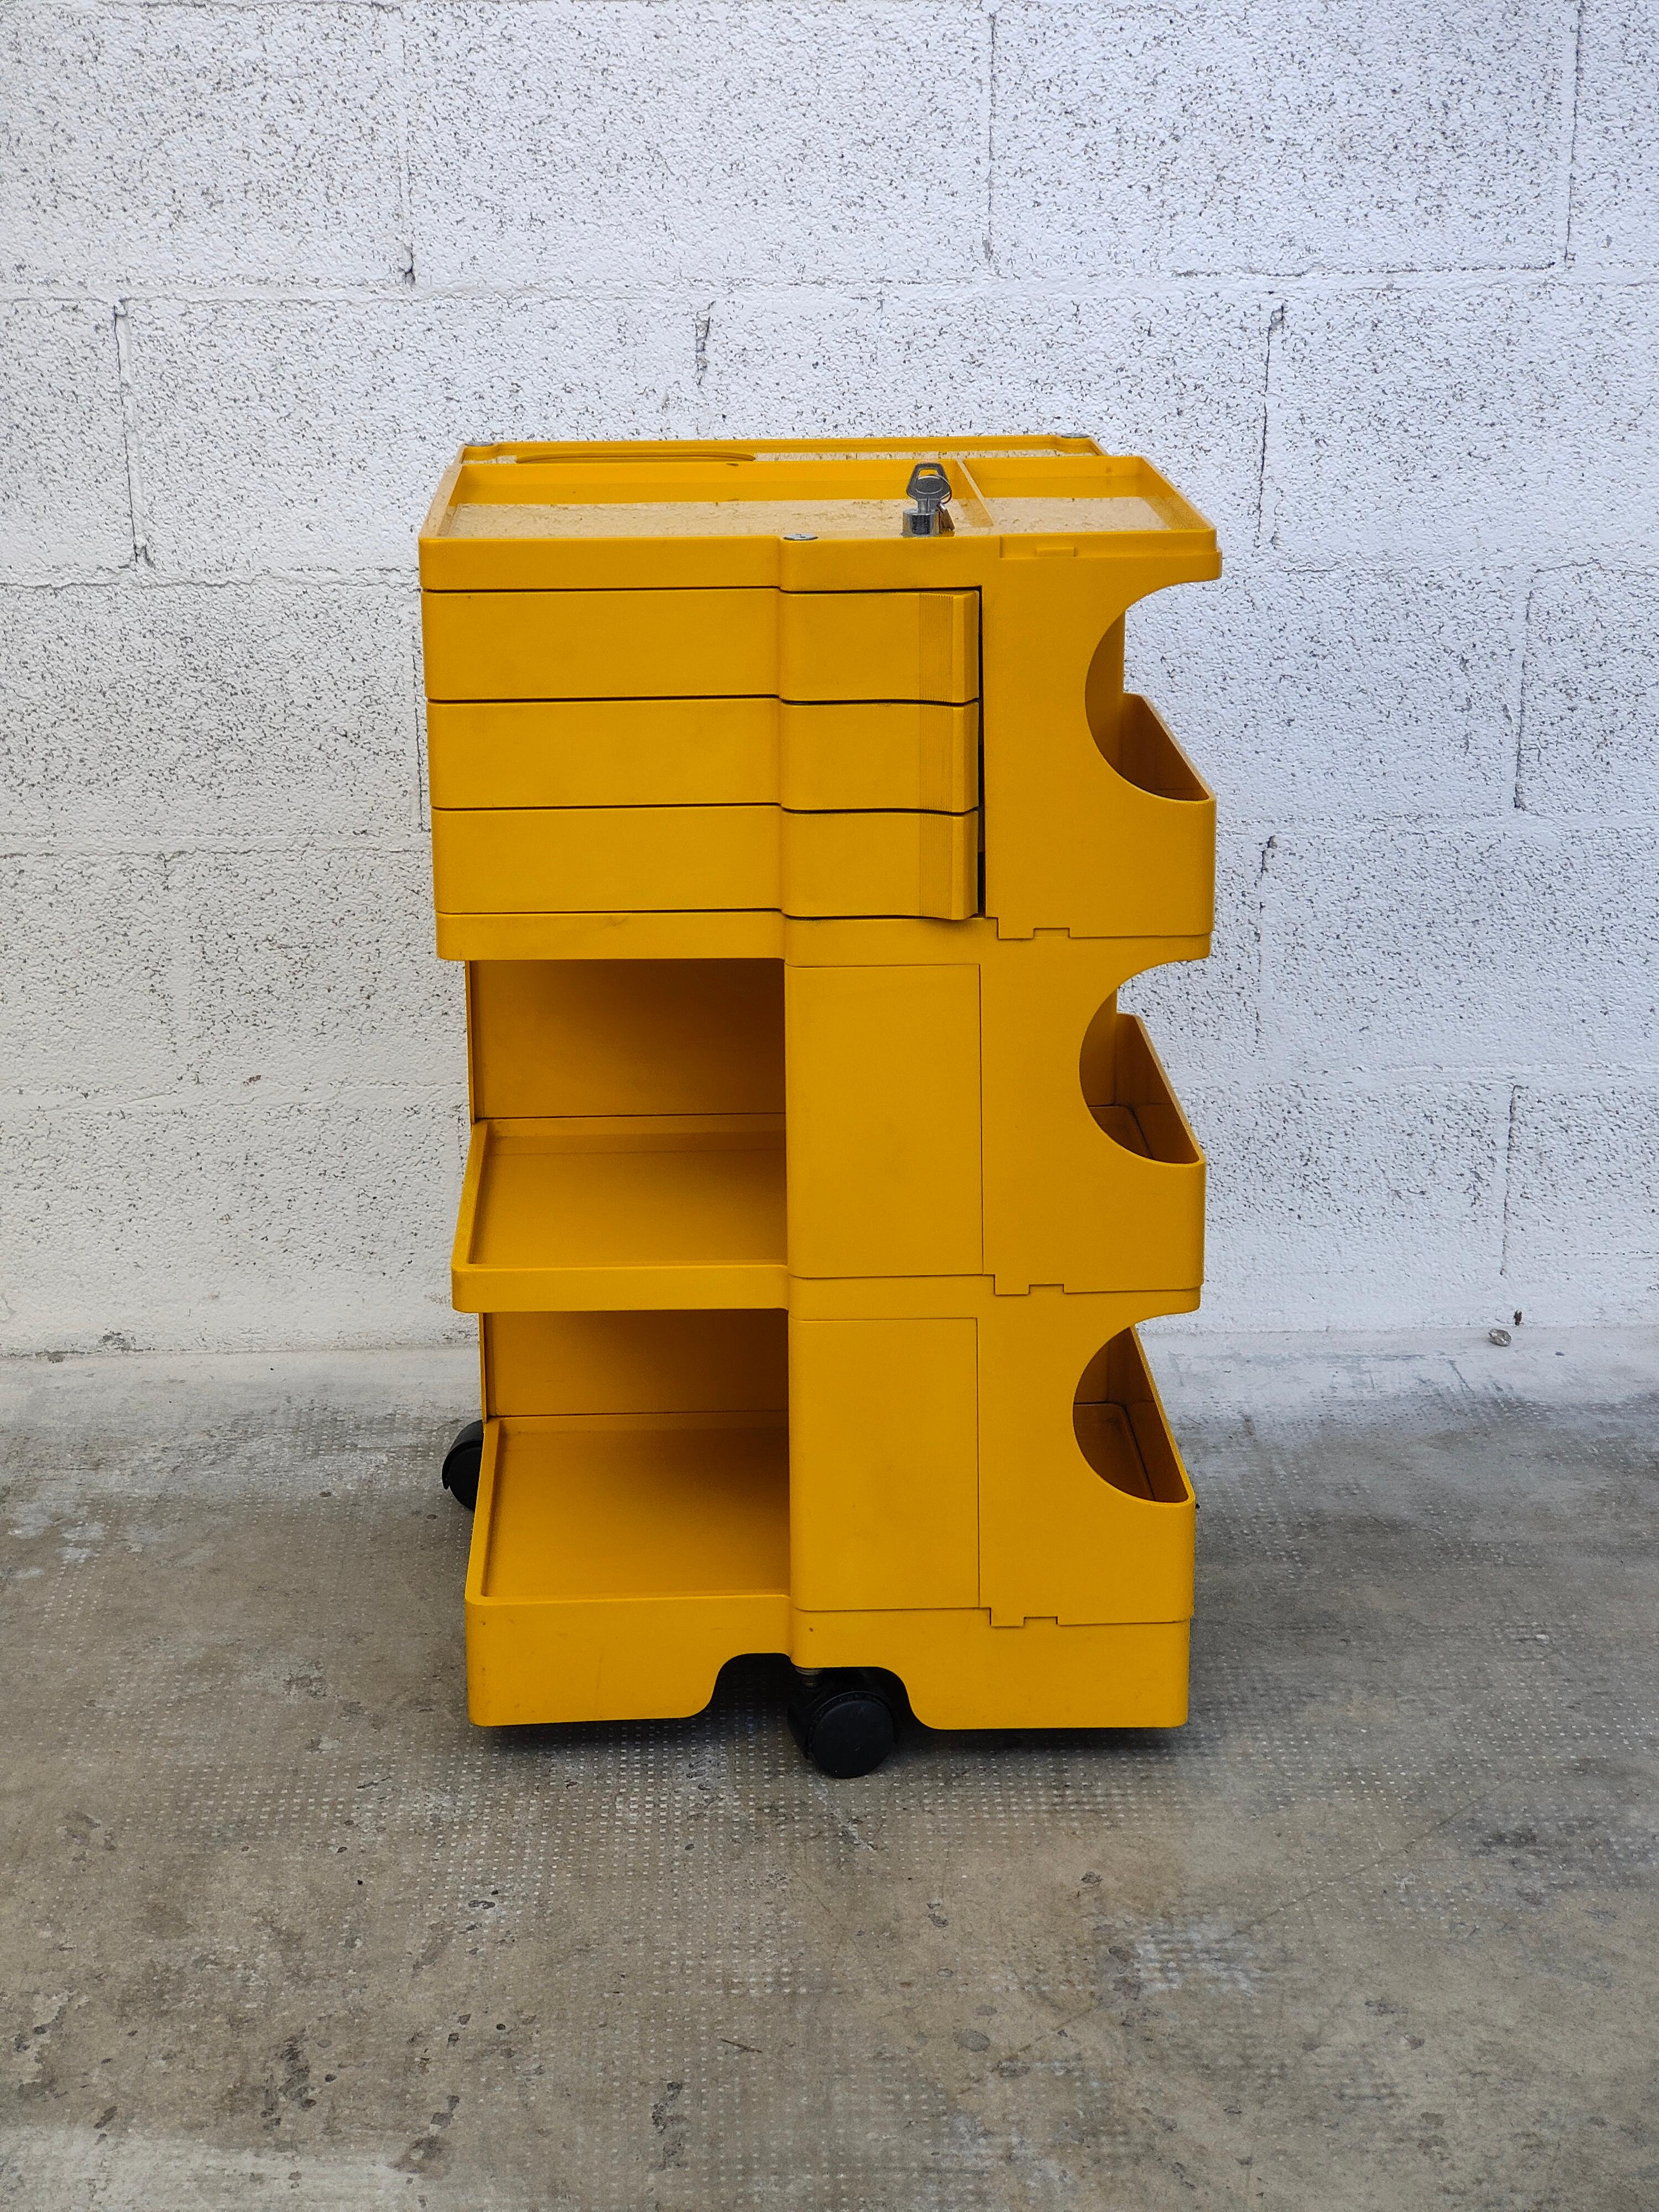 Iconique chariot Boby en couleur jaune très rare conçu par Joe Colombo et produit par Bieffeplast dans les années 1970.
Ce chariot 